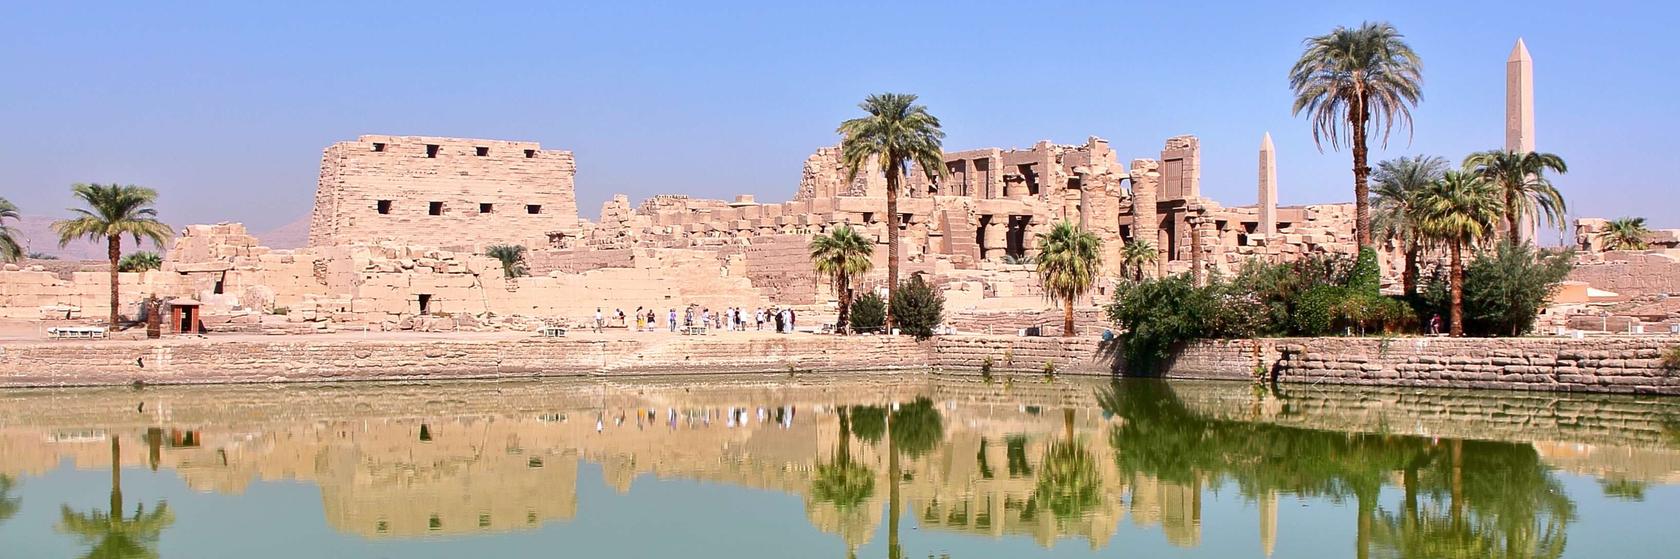 Doprava od Luxoru přes Lybijskou poušť až po Asuán